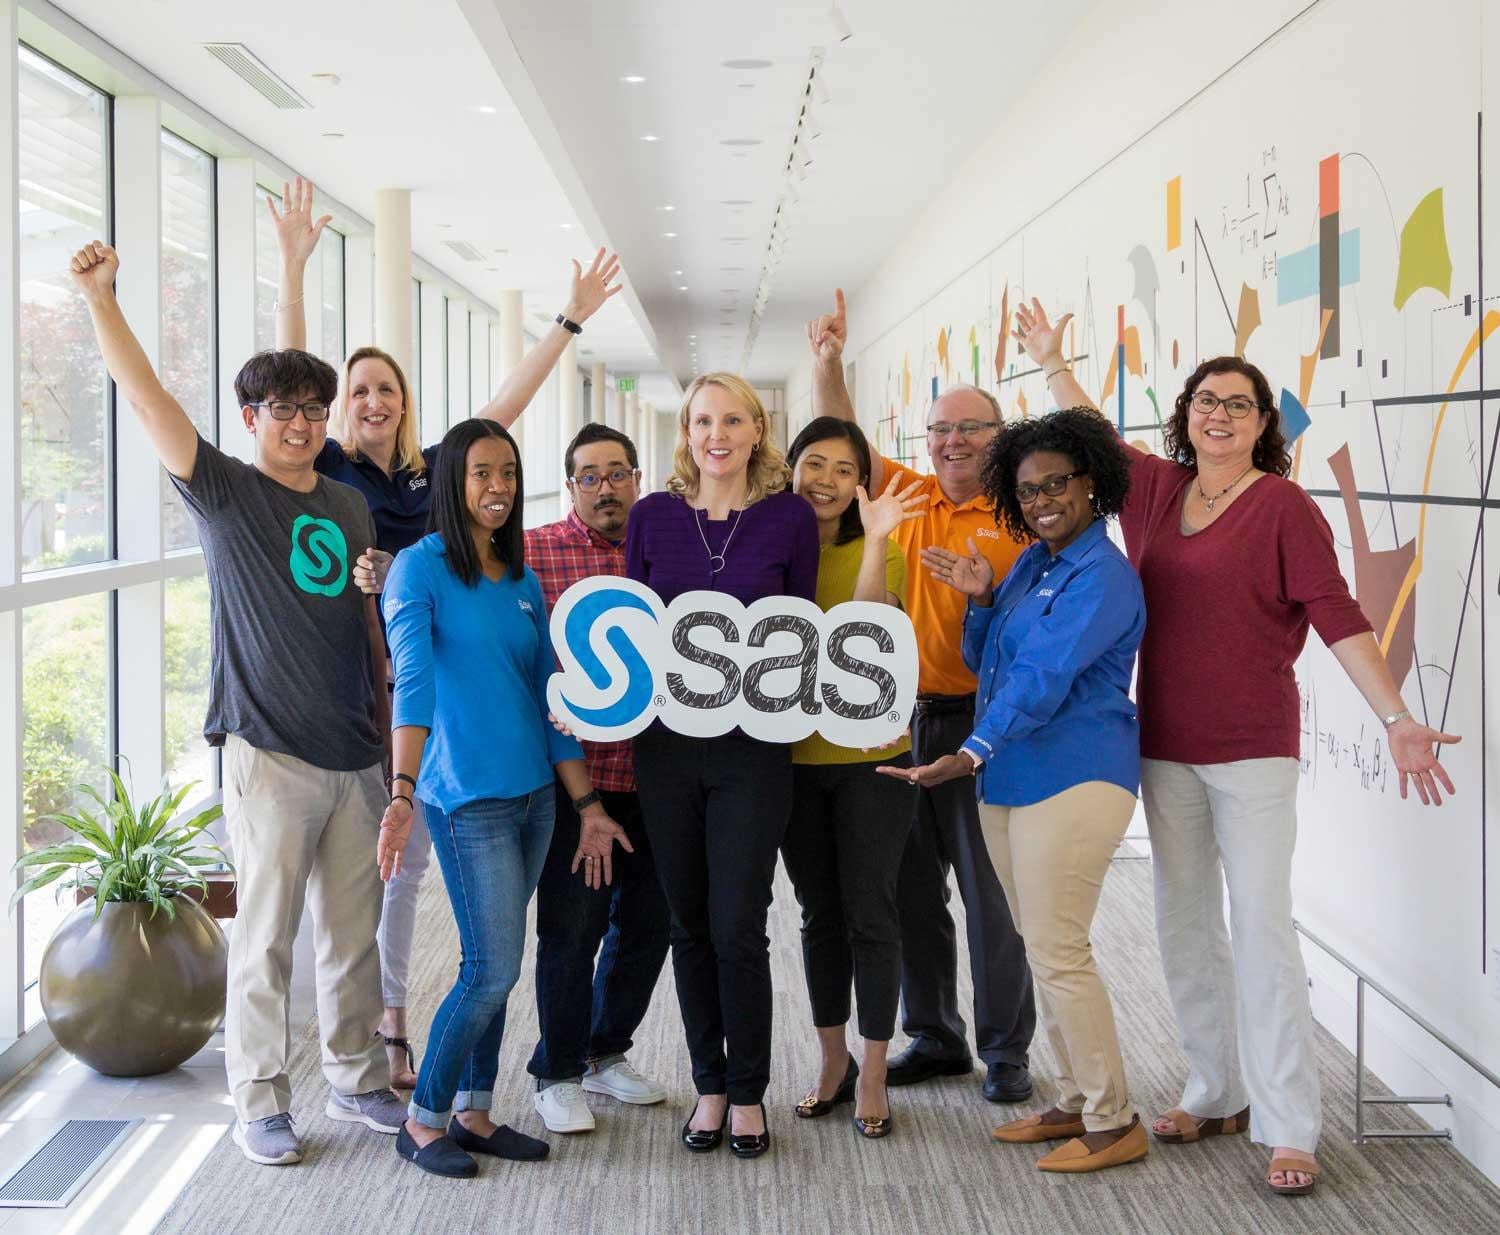 SAS employees holding SAS sign in hallway